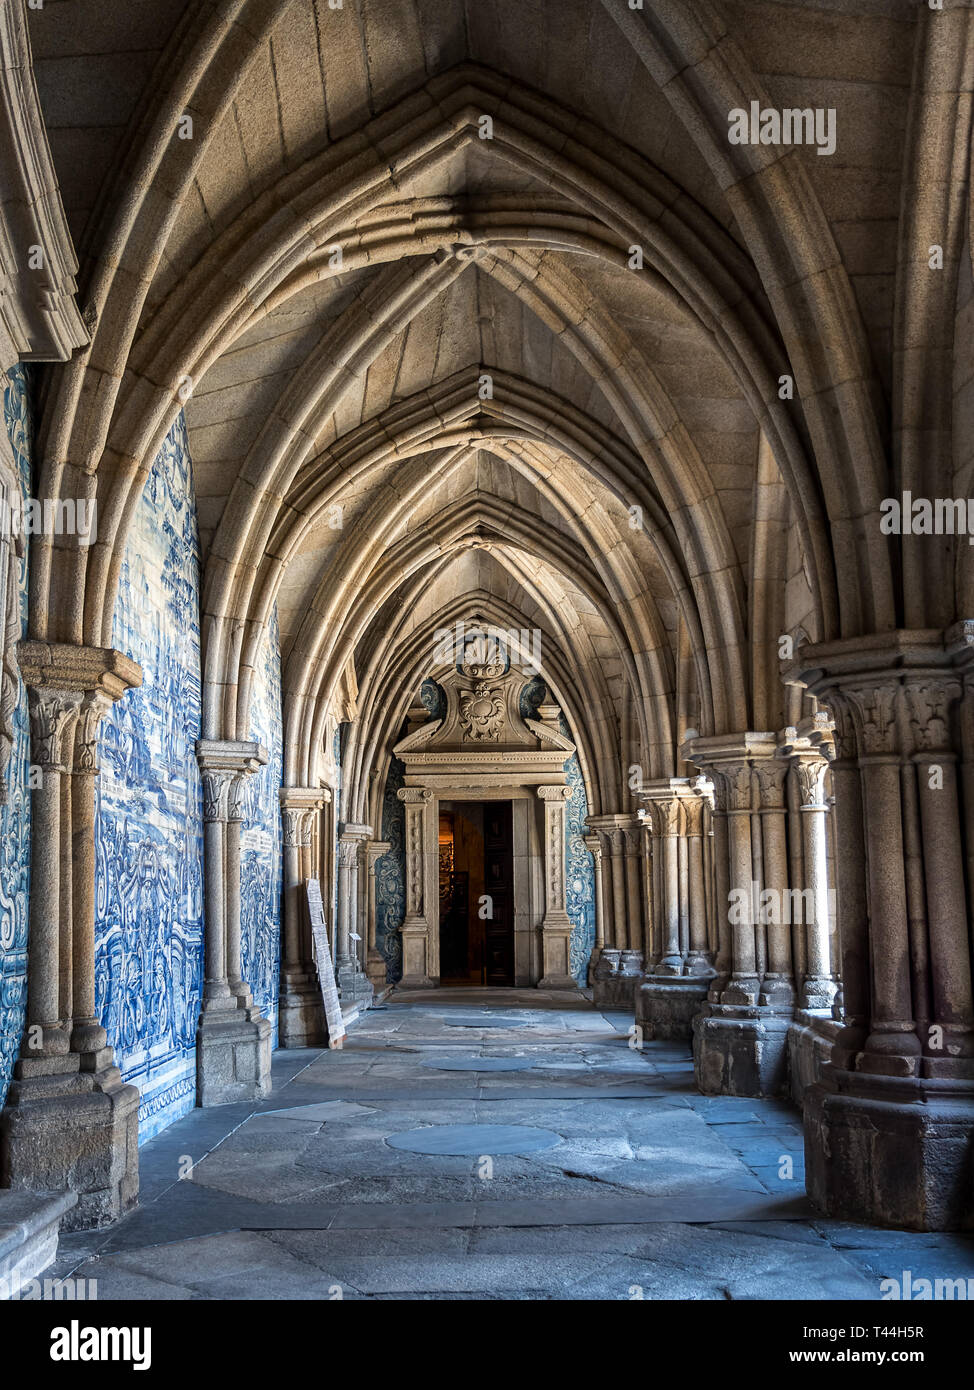 Catedral románica de Porto, Portugal es una iglesia católica romana situado en el centro histórico de la ciudad de Oporto. Foto de stock